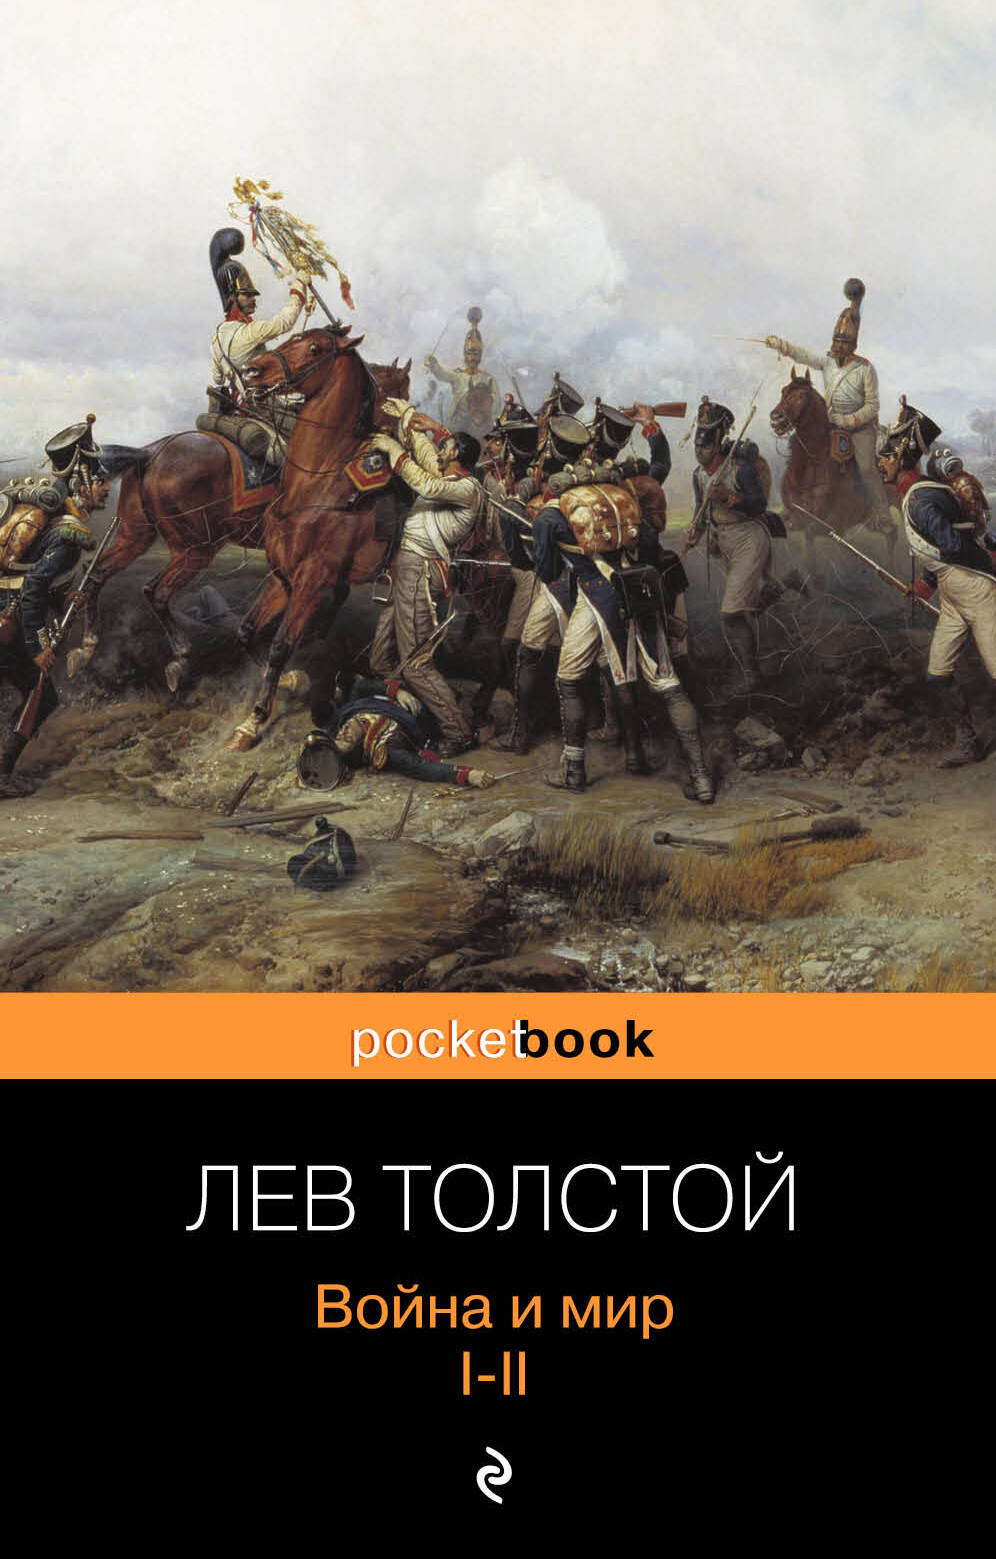 Толстой Лев Николаевич Война и мир. Том I-II (комплект из 2 книг)